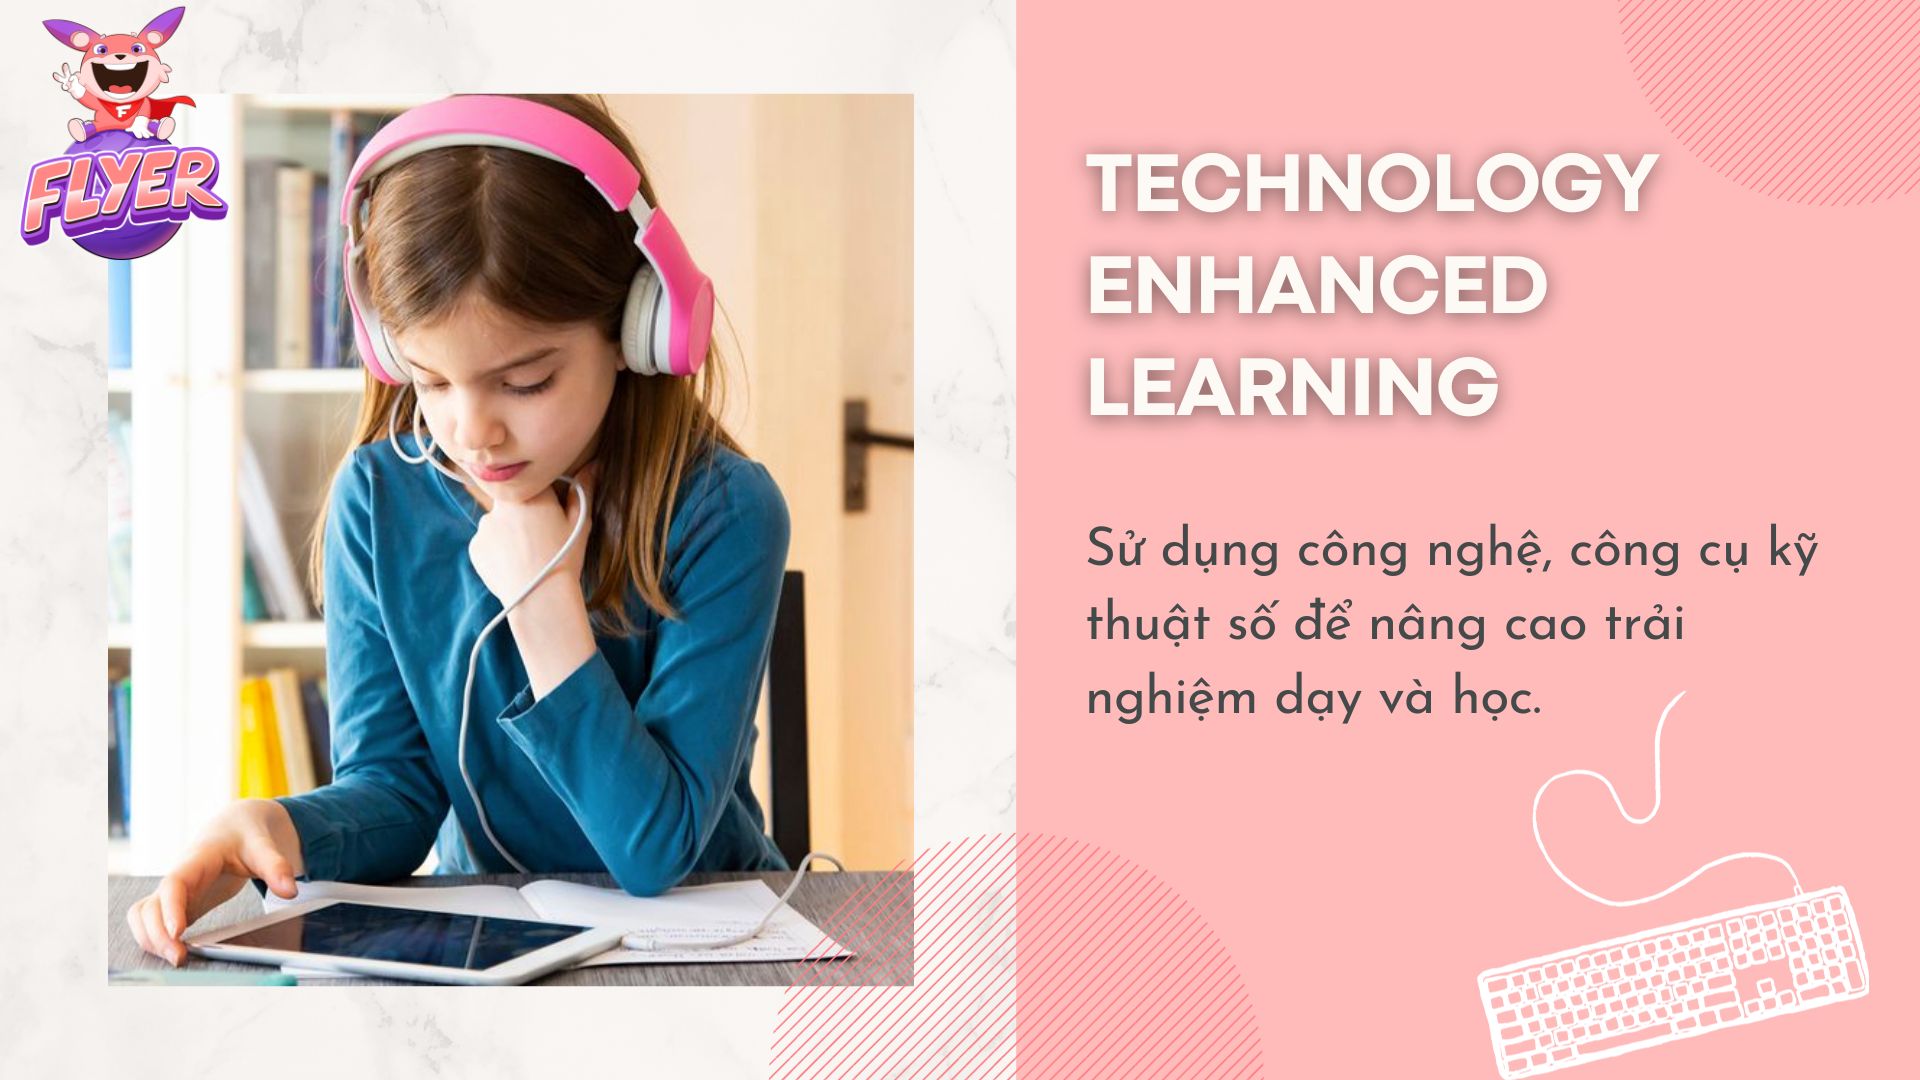 Technology-Enhanced Learning là gì? Học tập kỹ thuật số